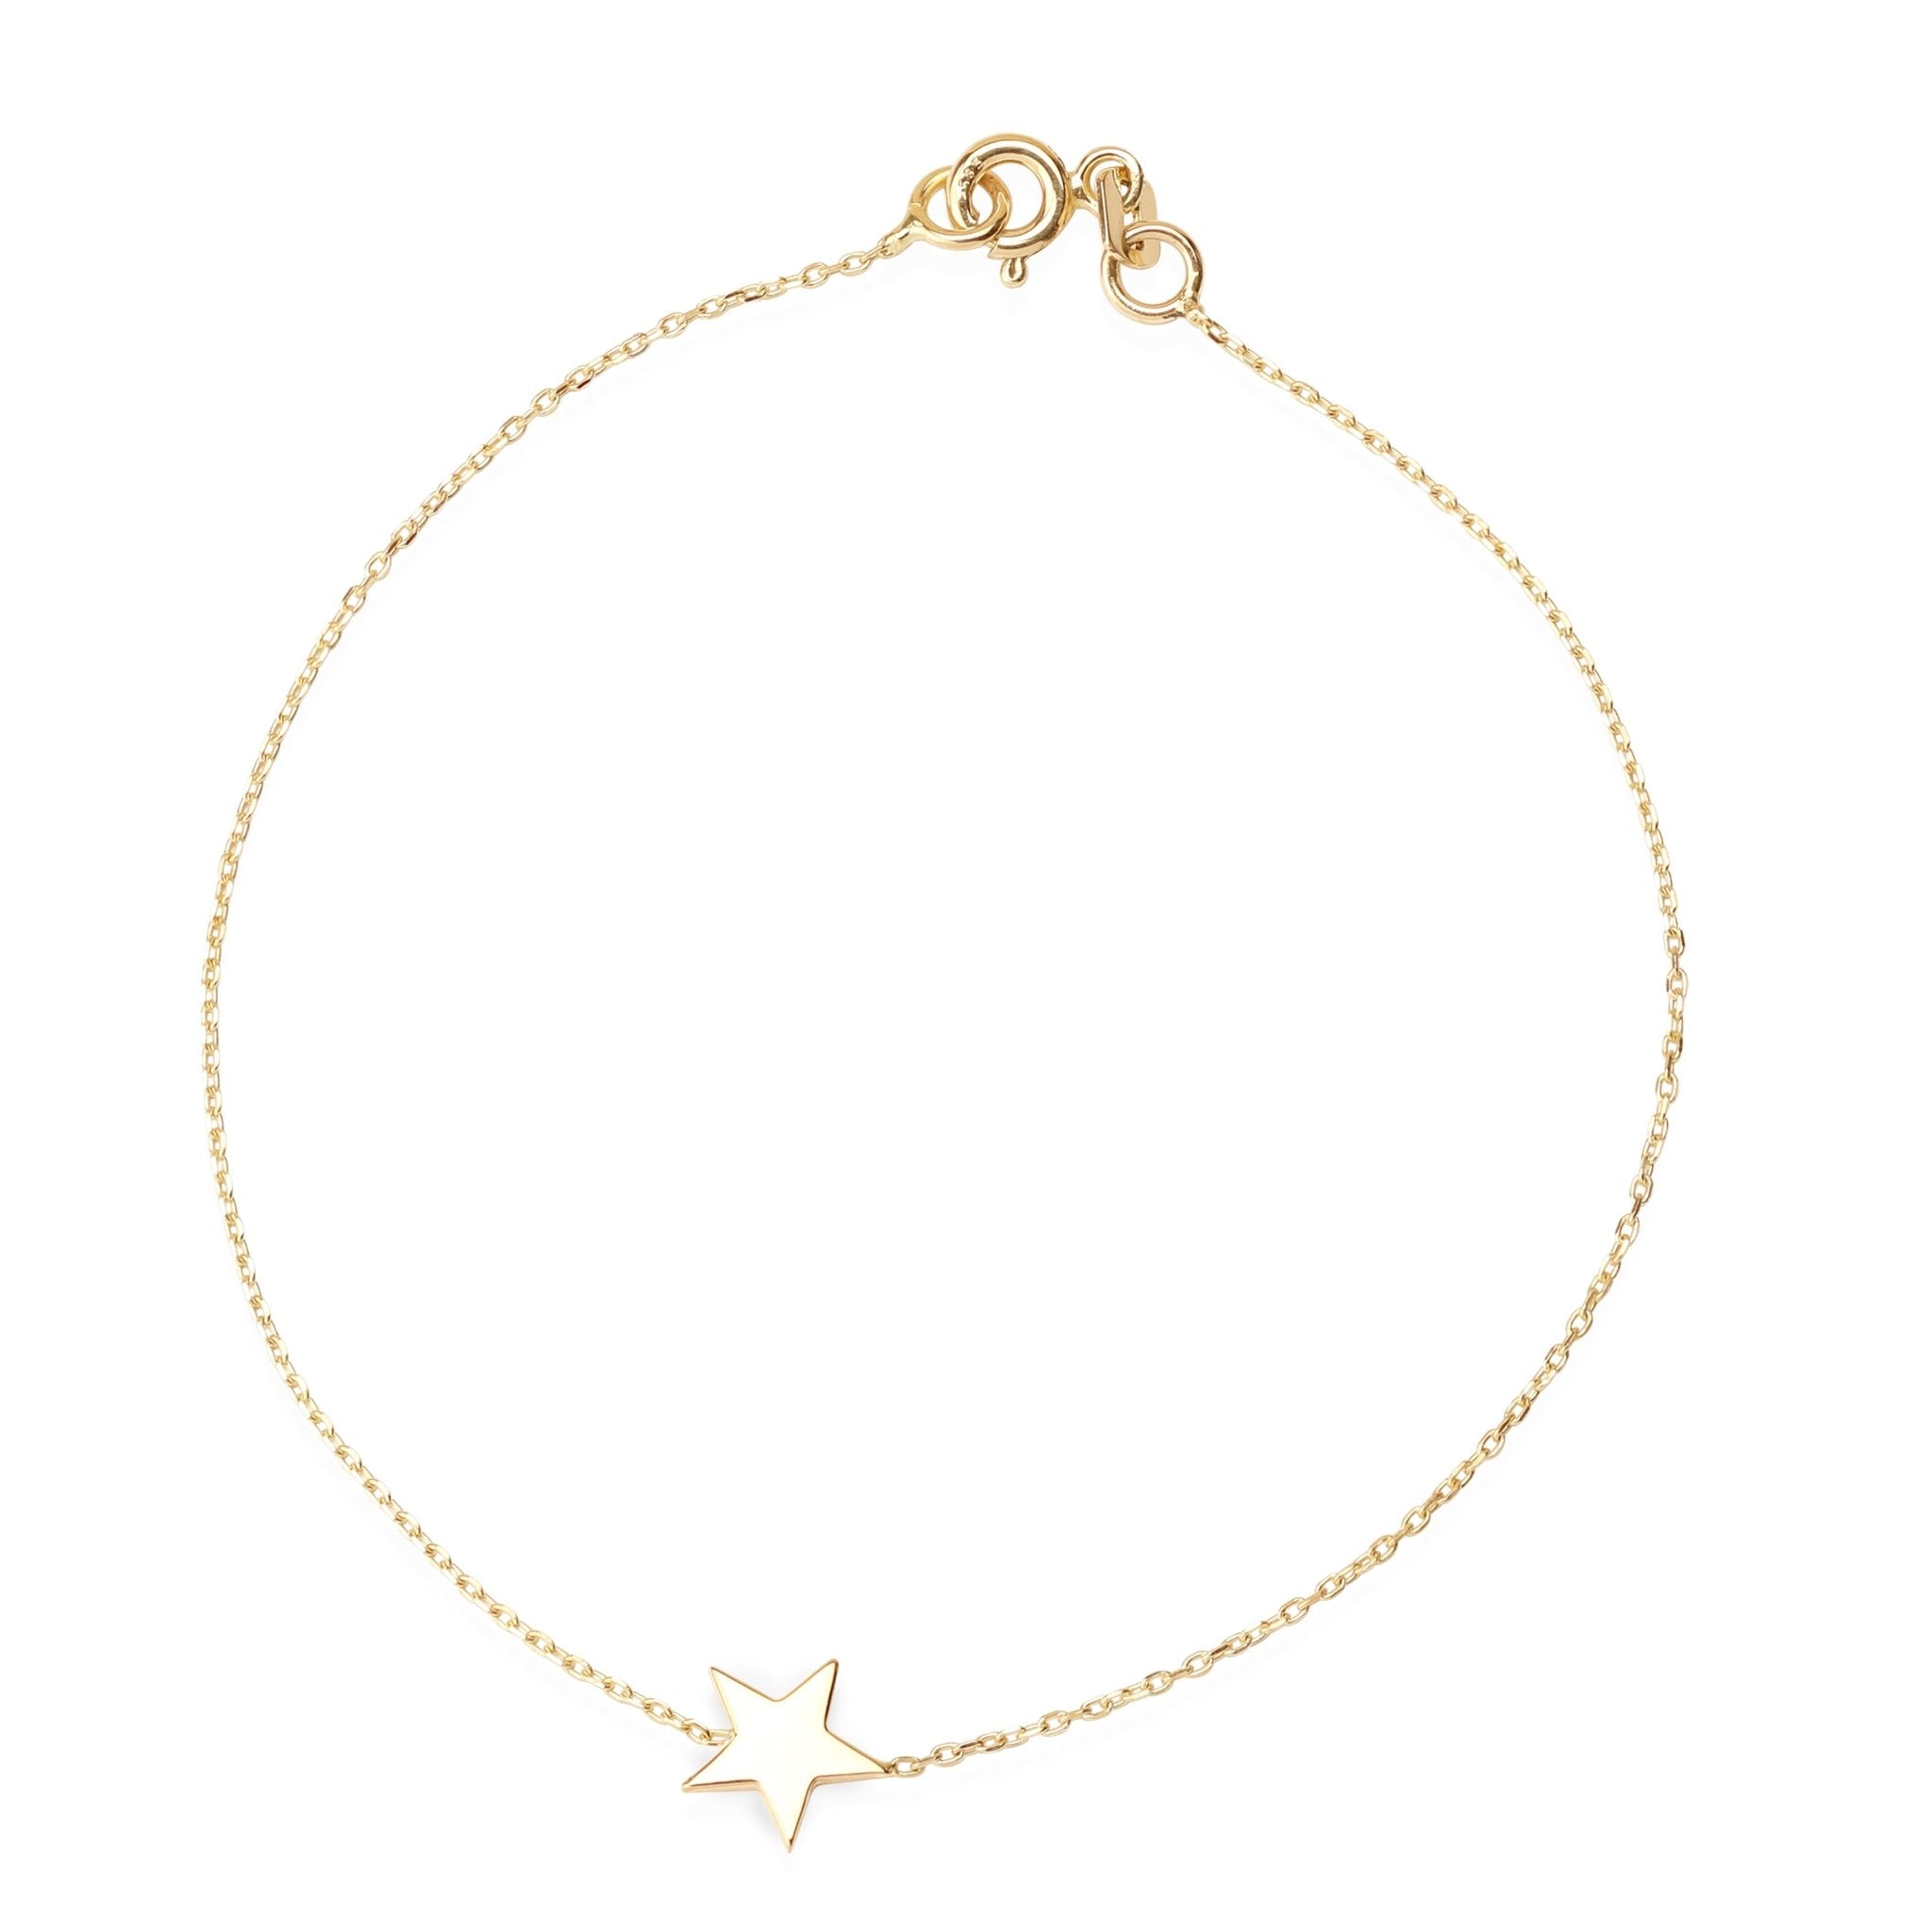 Star Charm Chain Bracelet Bracelets Estella Collection #product_description# 17772 14k Chain Bracelets Yellow Gold #tag4# #tag5# #tag6# #tag7# #tag8# #tag9# #tag10#